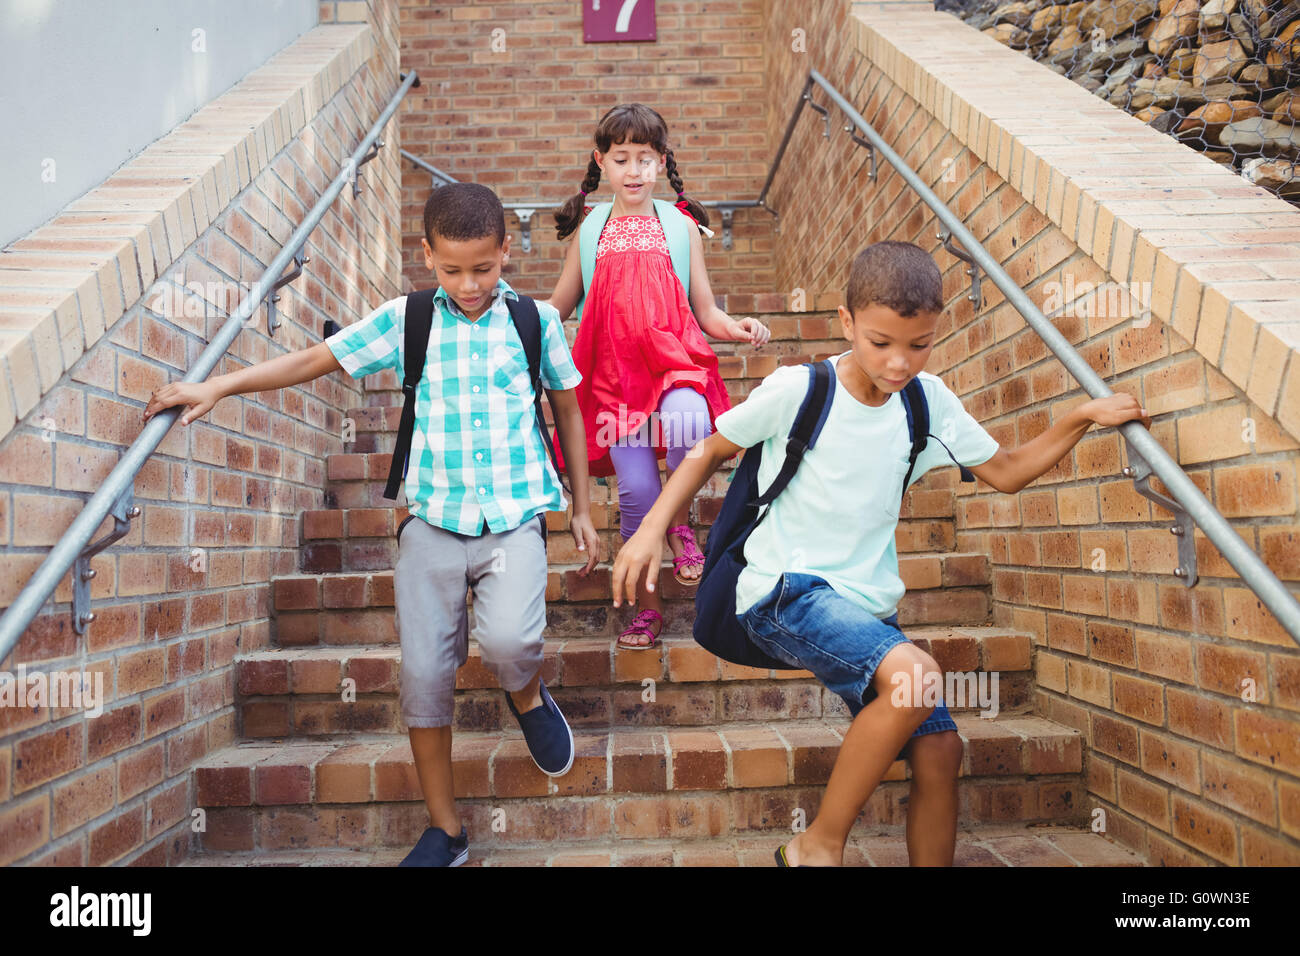 Enfants en bas de l'escalier Banque D'Images